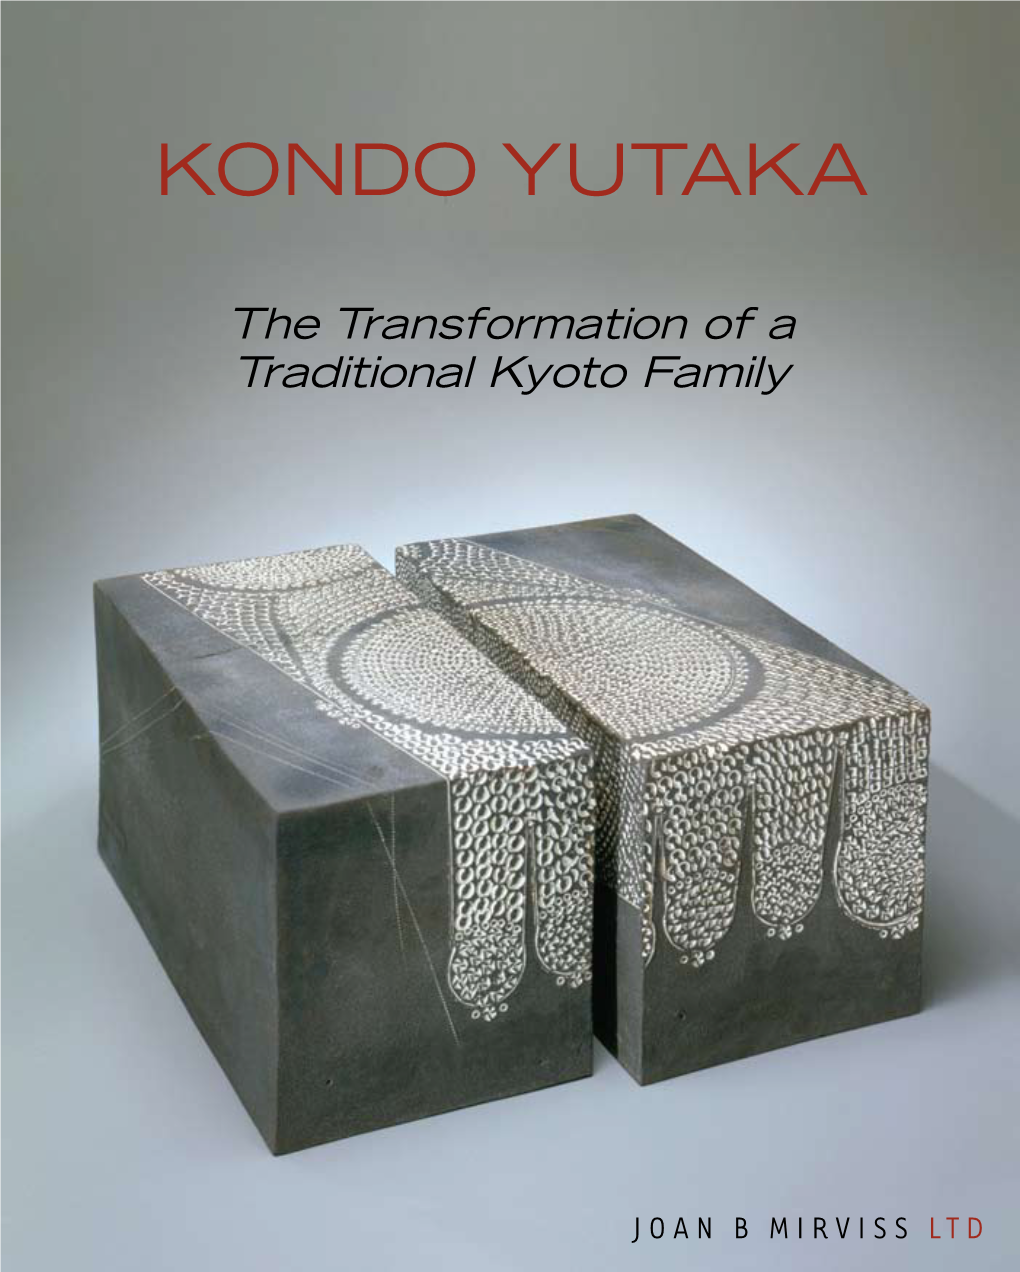 Kondo Yutaka